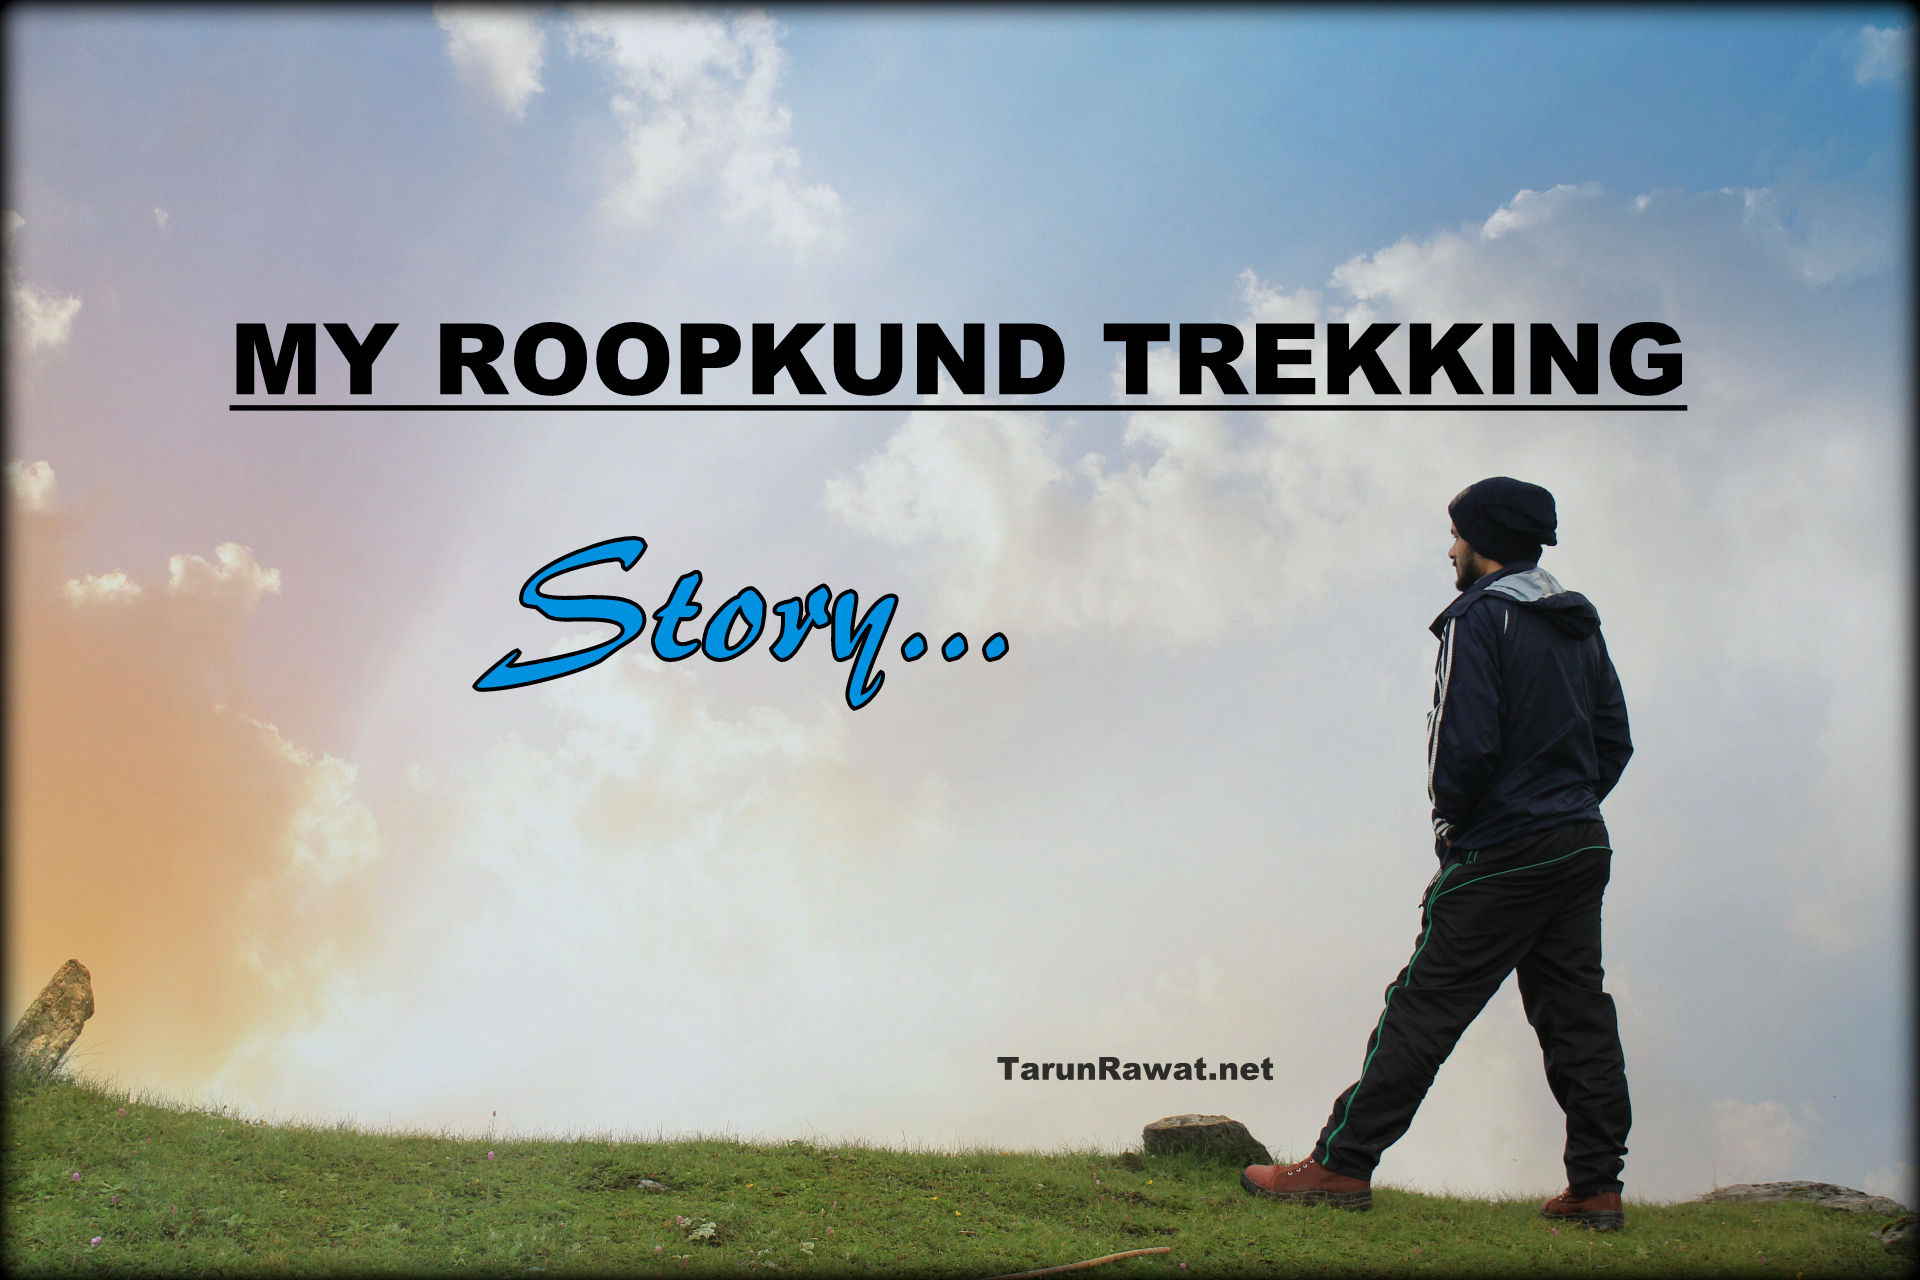 Tarun Rawat, Roopkund Trekking Story